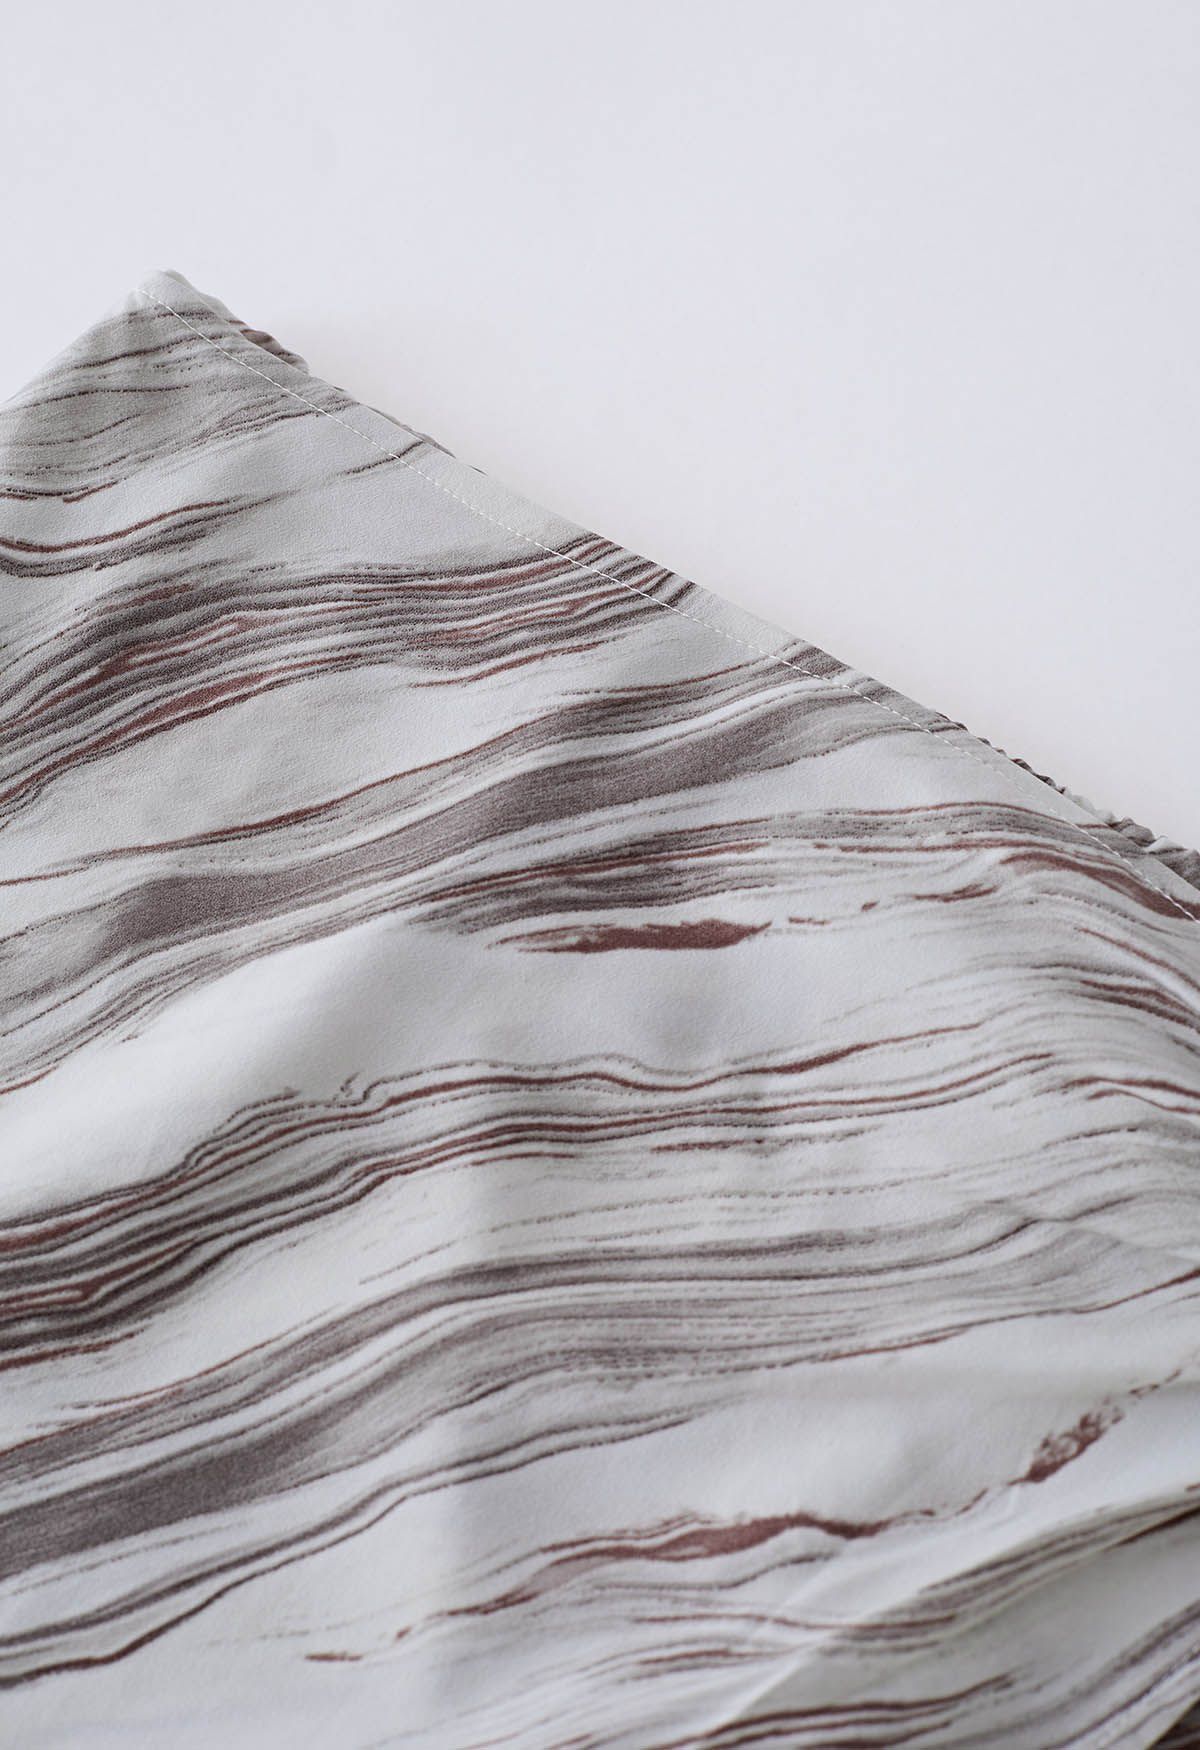 Marble Print Tie Waist Flap Midi Skirt in Brown